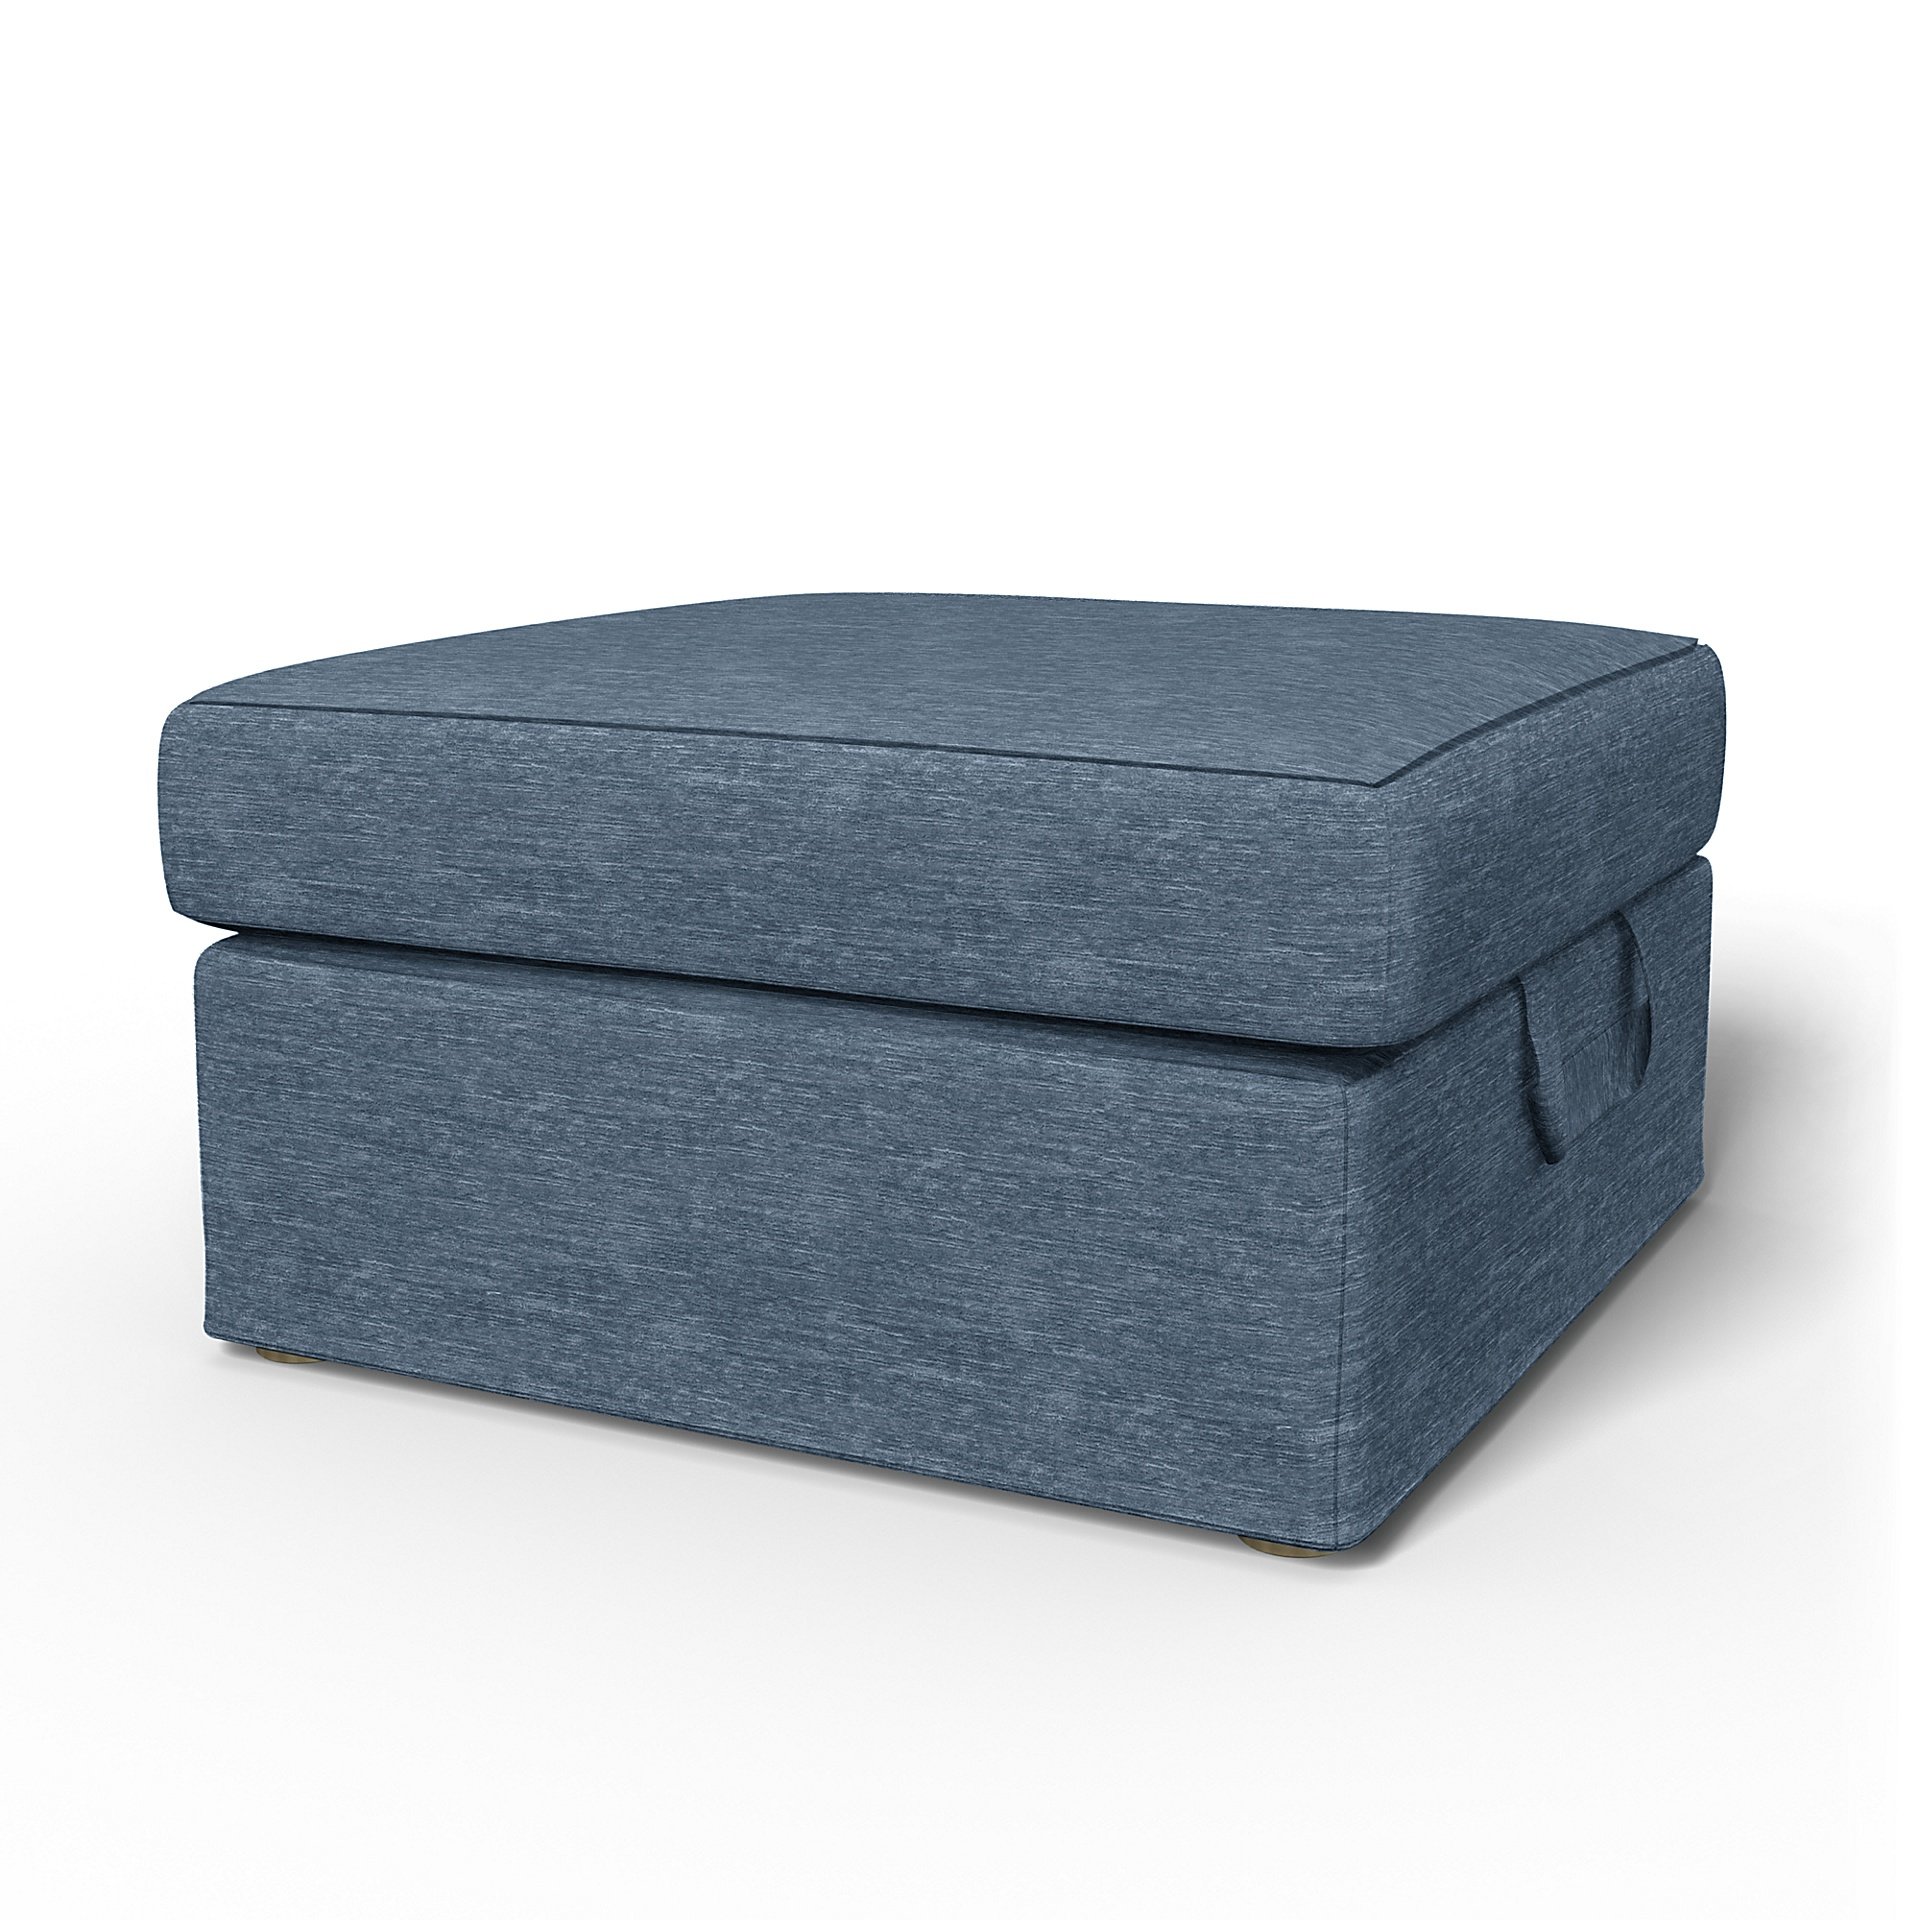 IKEA - Tomelilla Foto Footstool Cover, Mineral Blue, Velvet - Bemz